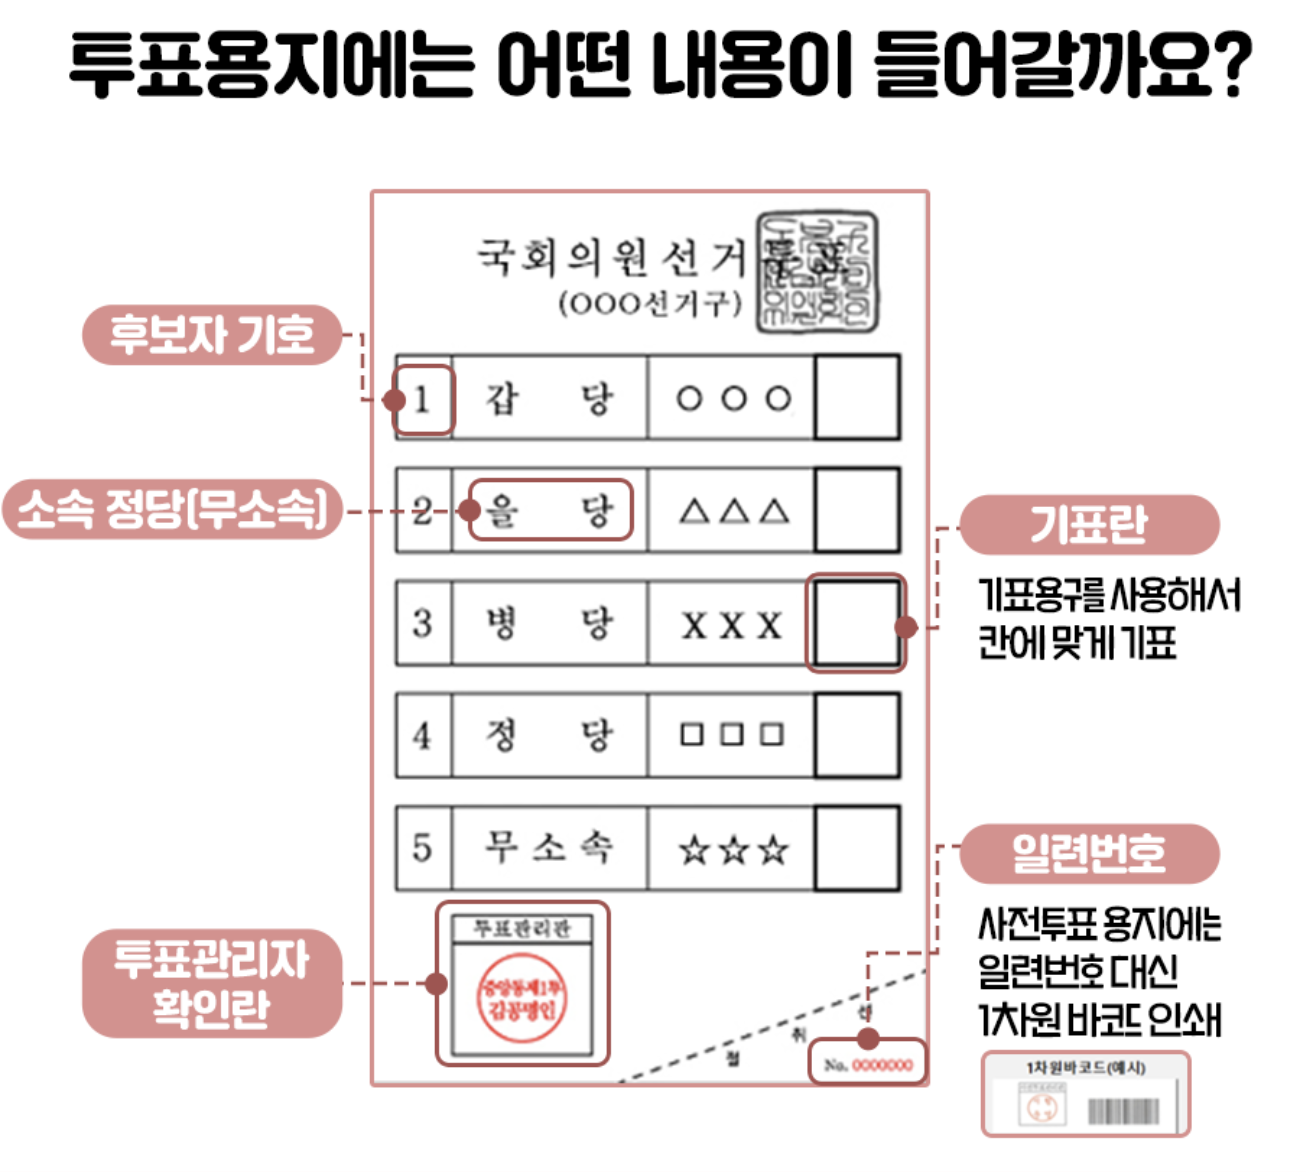 제22대 국회의원선거 투표용지 이해&amp;#44; 투표 방법 설명 이미지